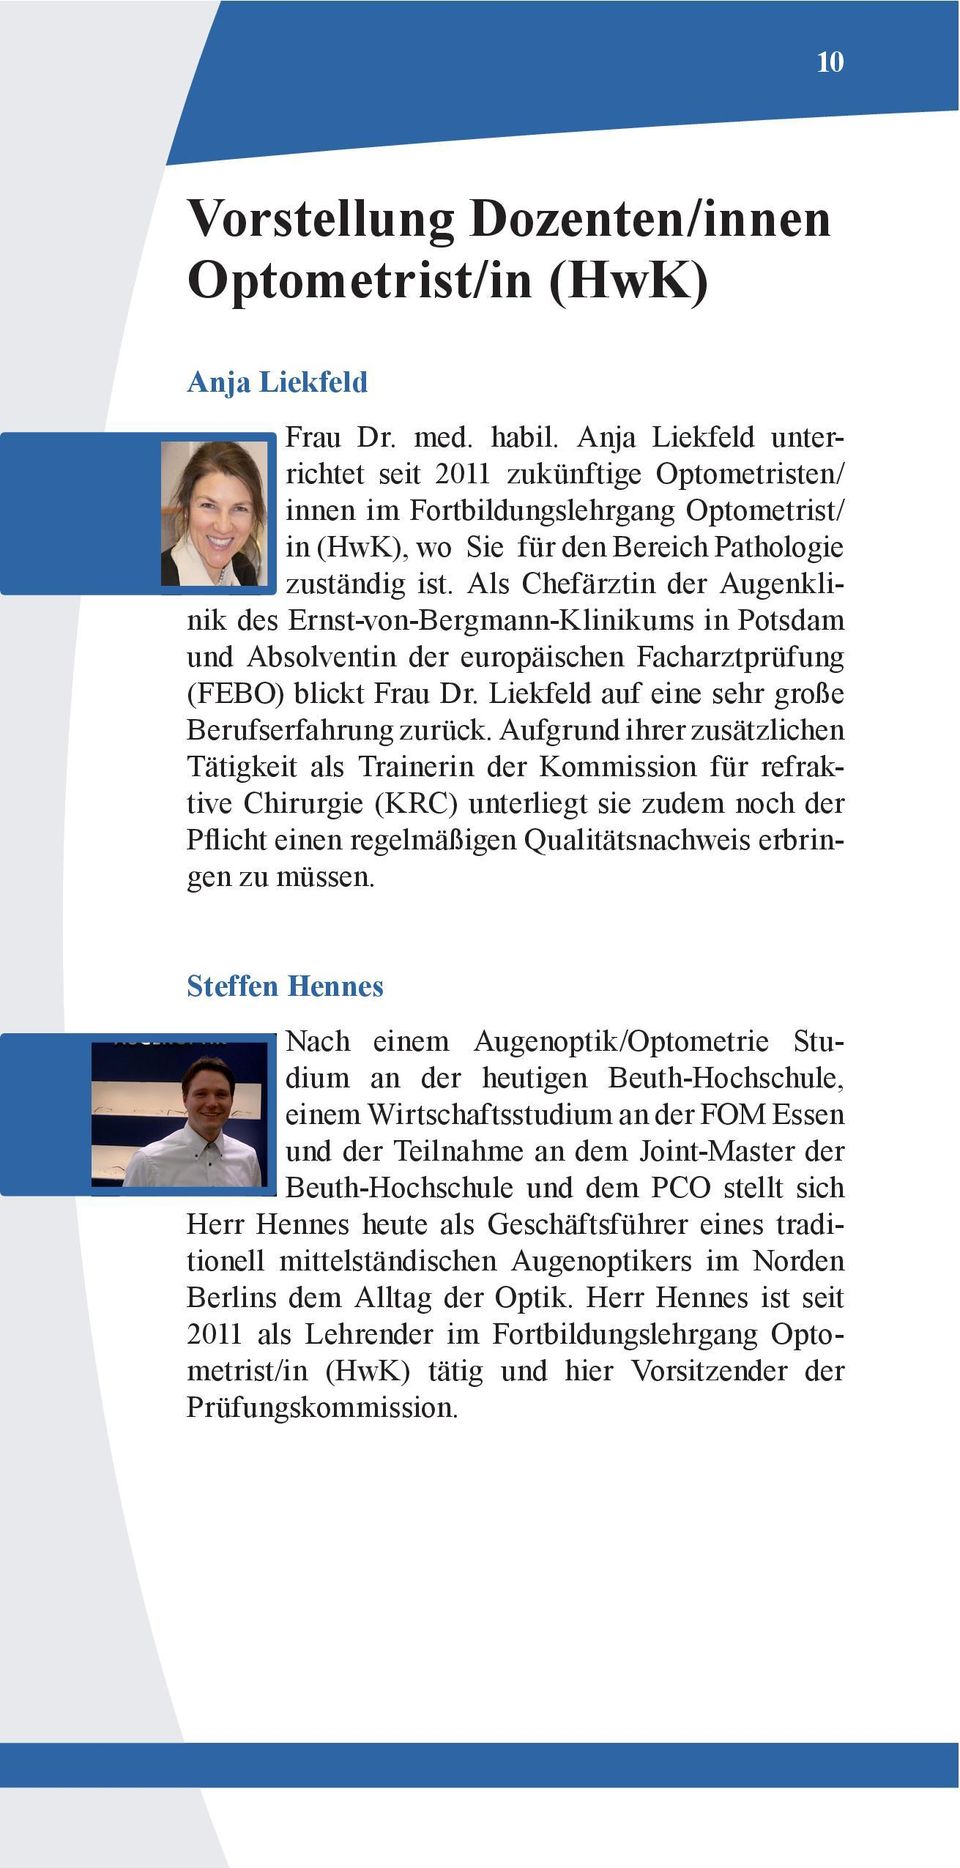 Als Chefärztin der Augenklinik des Ernst-von-Bergmann-Klinikums in Potsdam und Absolventin der europäischen Facharztprüfung (FEBO) blickt Frau Dr. Liekfeld auf eine sehr große Berufserfahrung zurück.